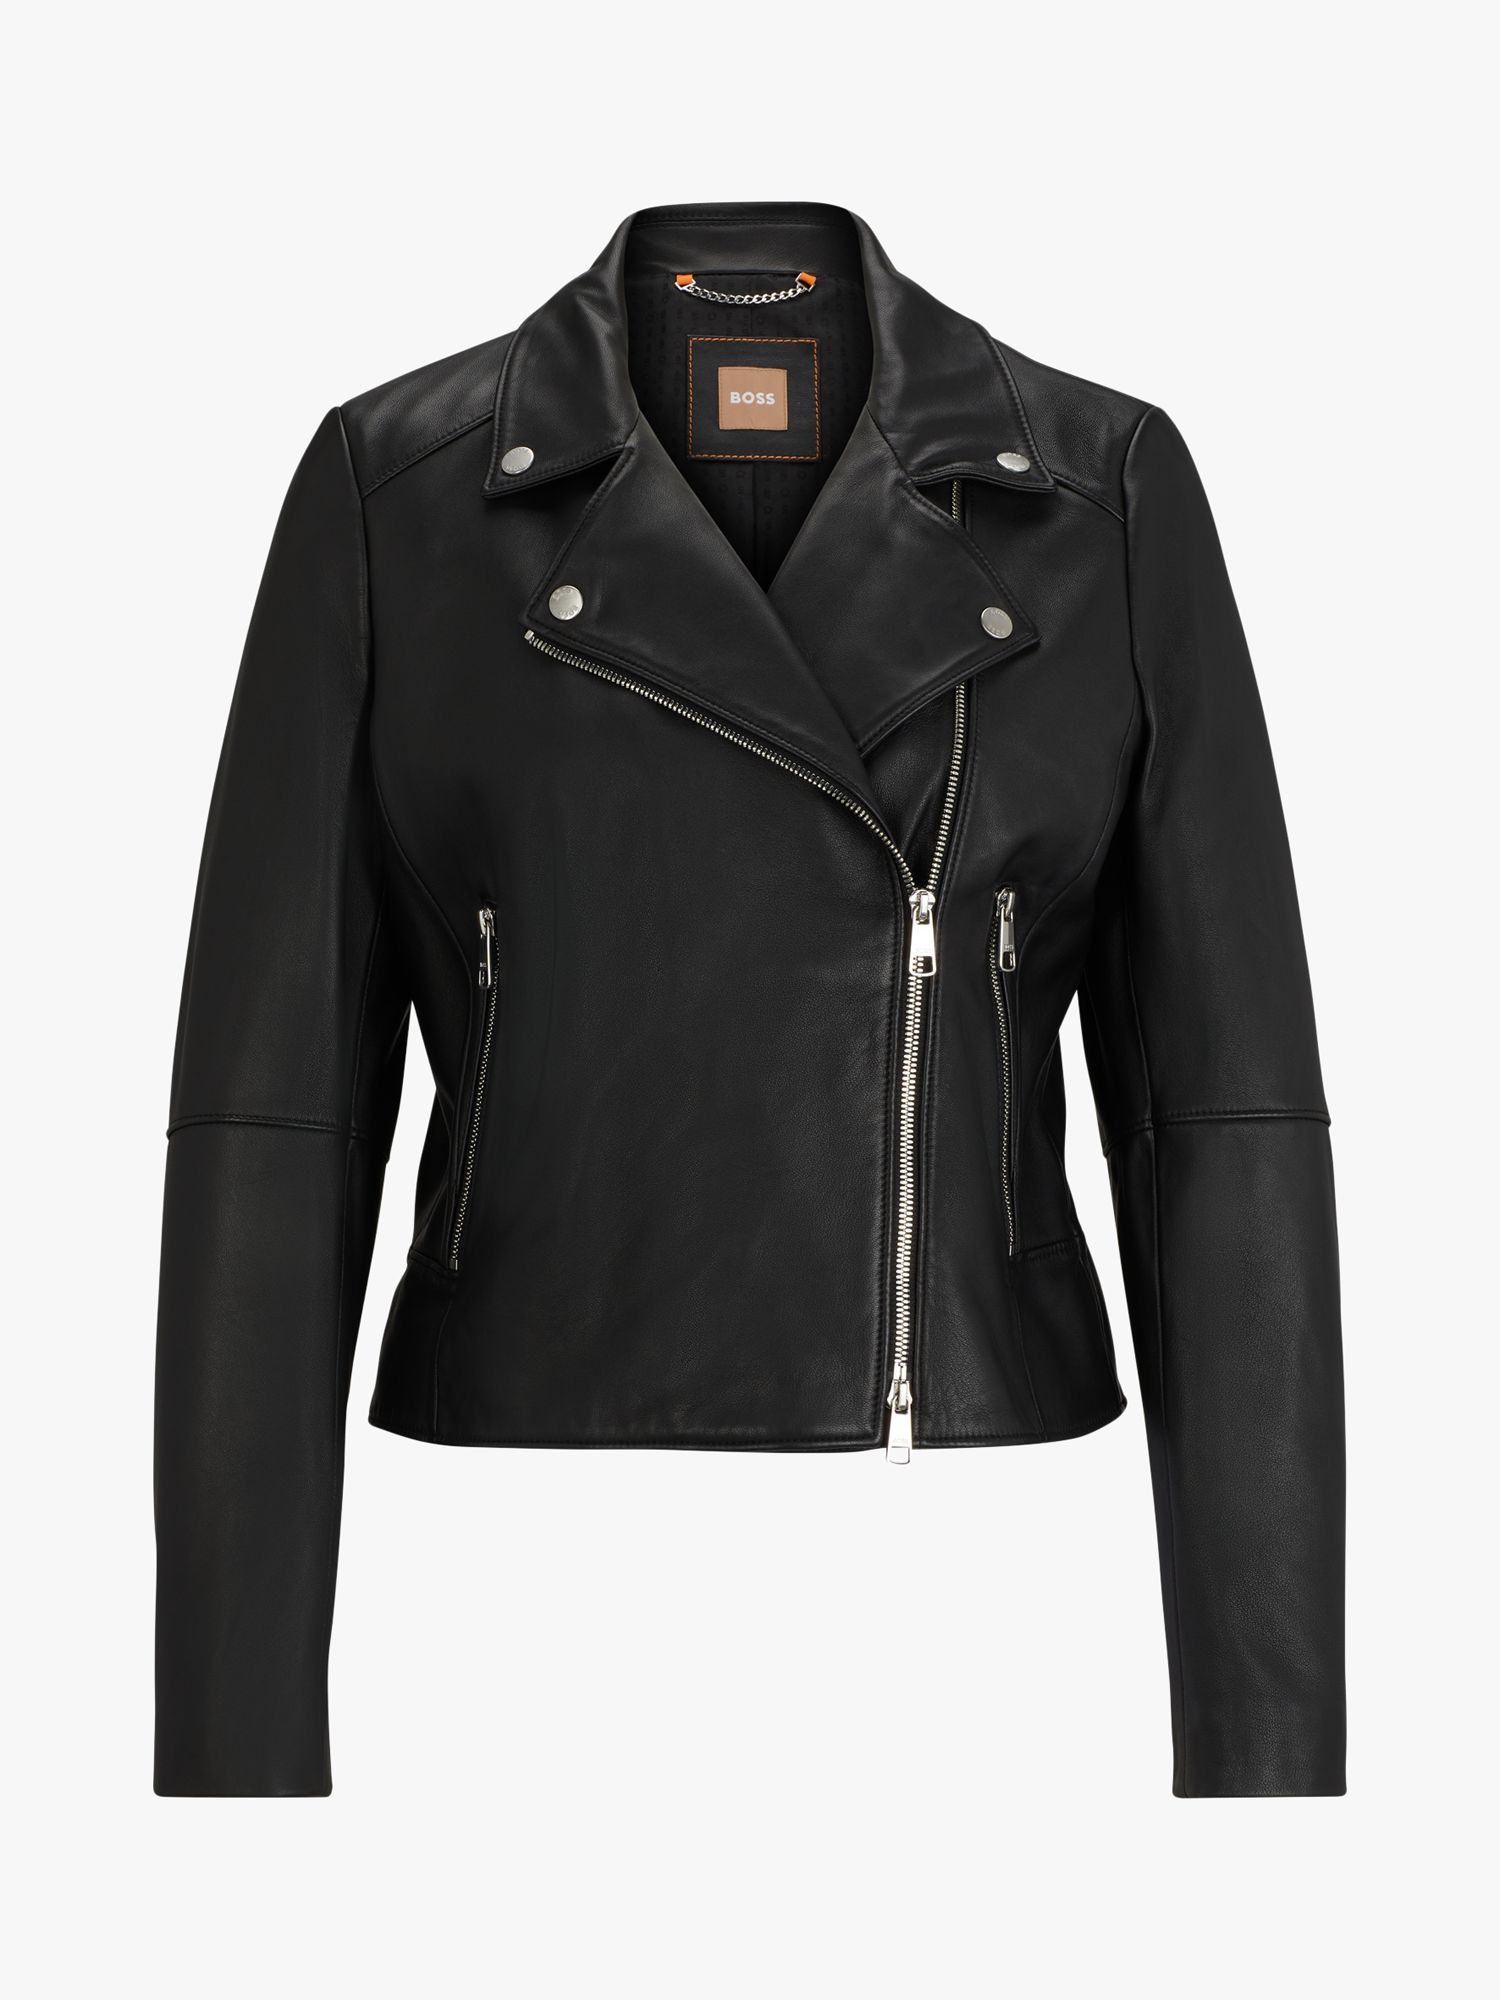 Buy BOSS Saleli Leather Biker Jacket, Black Online at johnlewis.com